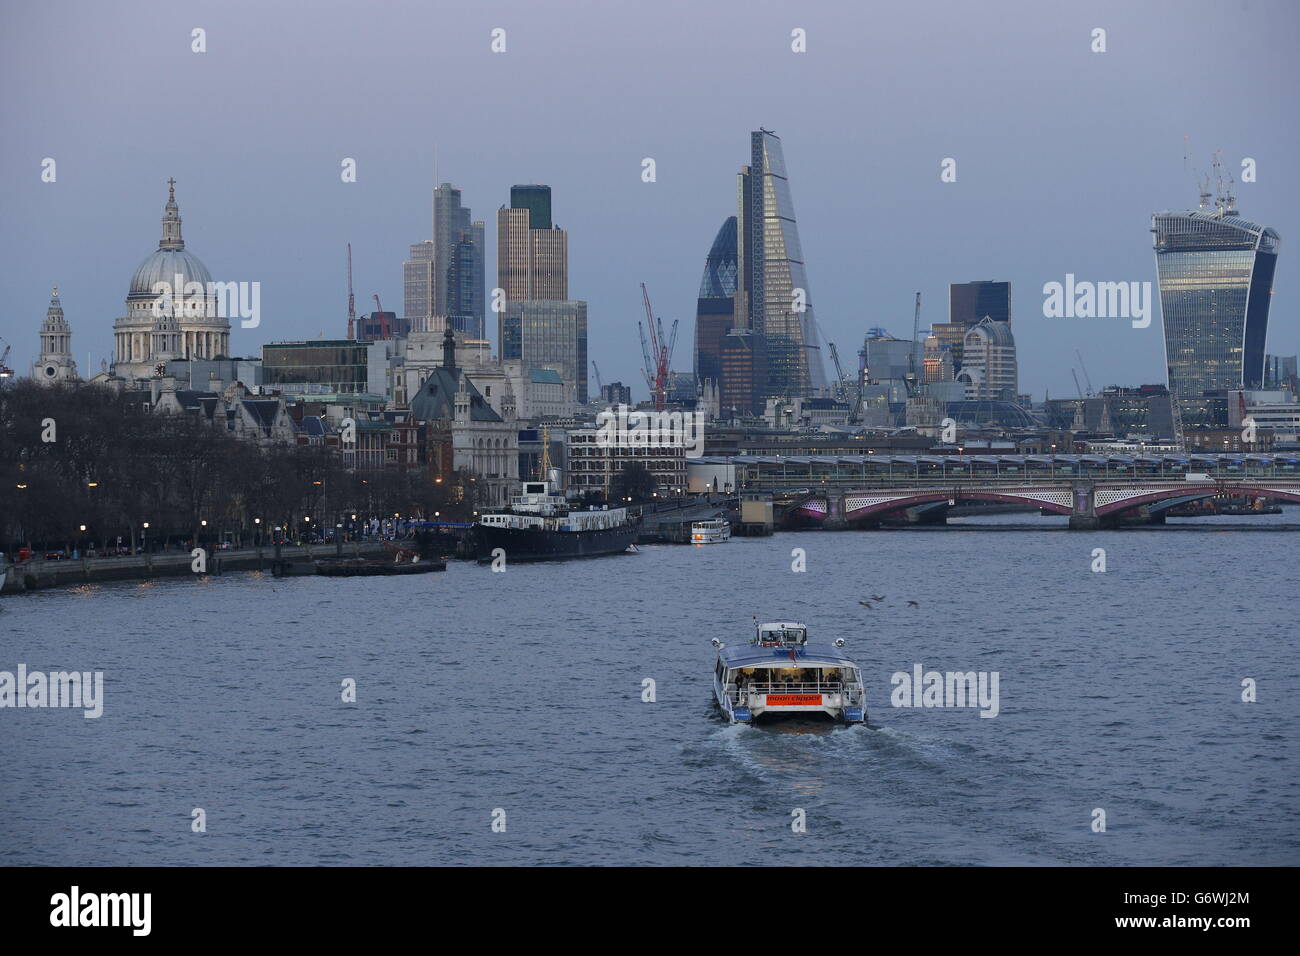 Une vue en soirée au crépuscule du centre de Londres depuis le pont Waterloo, tandis que certaines parties de la Grande-Bretagne ont profité de leur temps le plus chaud de l'année aujourd'hui alors que les températures ont atteint 20 °C (68 °F) pour la première fois en près de six mois. Banque D'Images